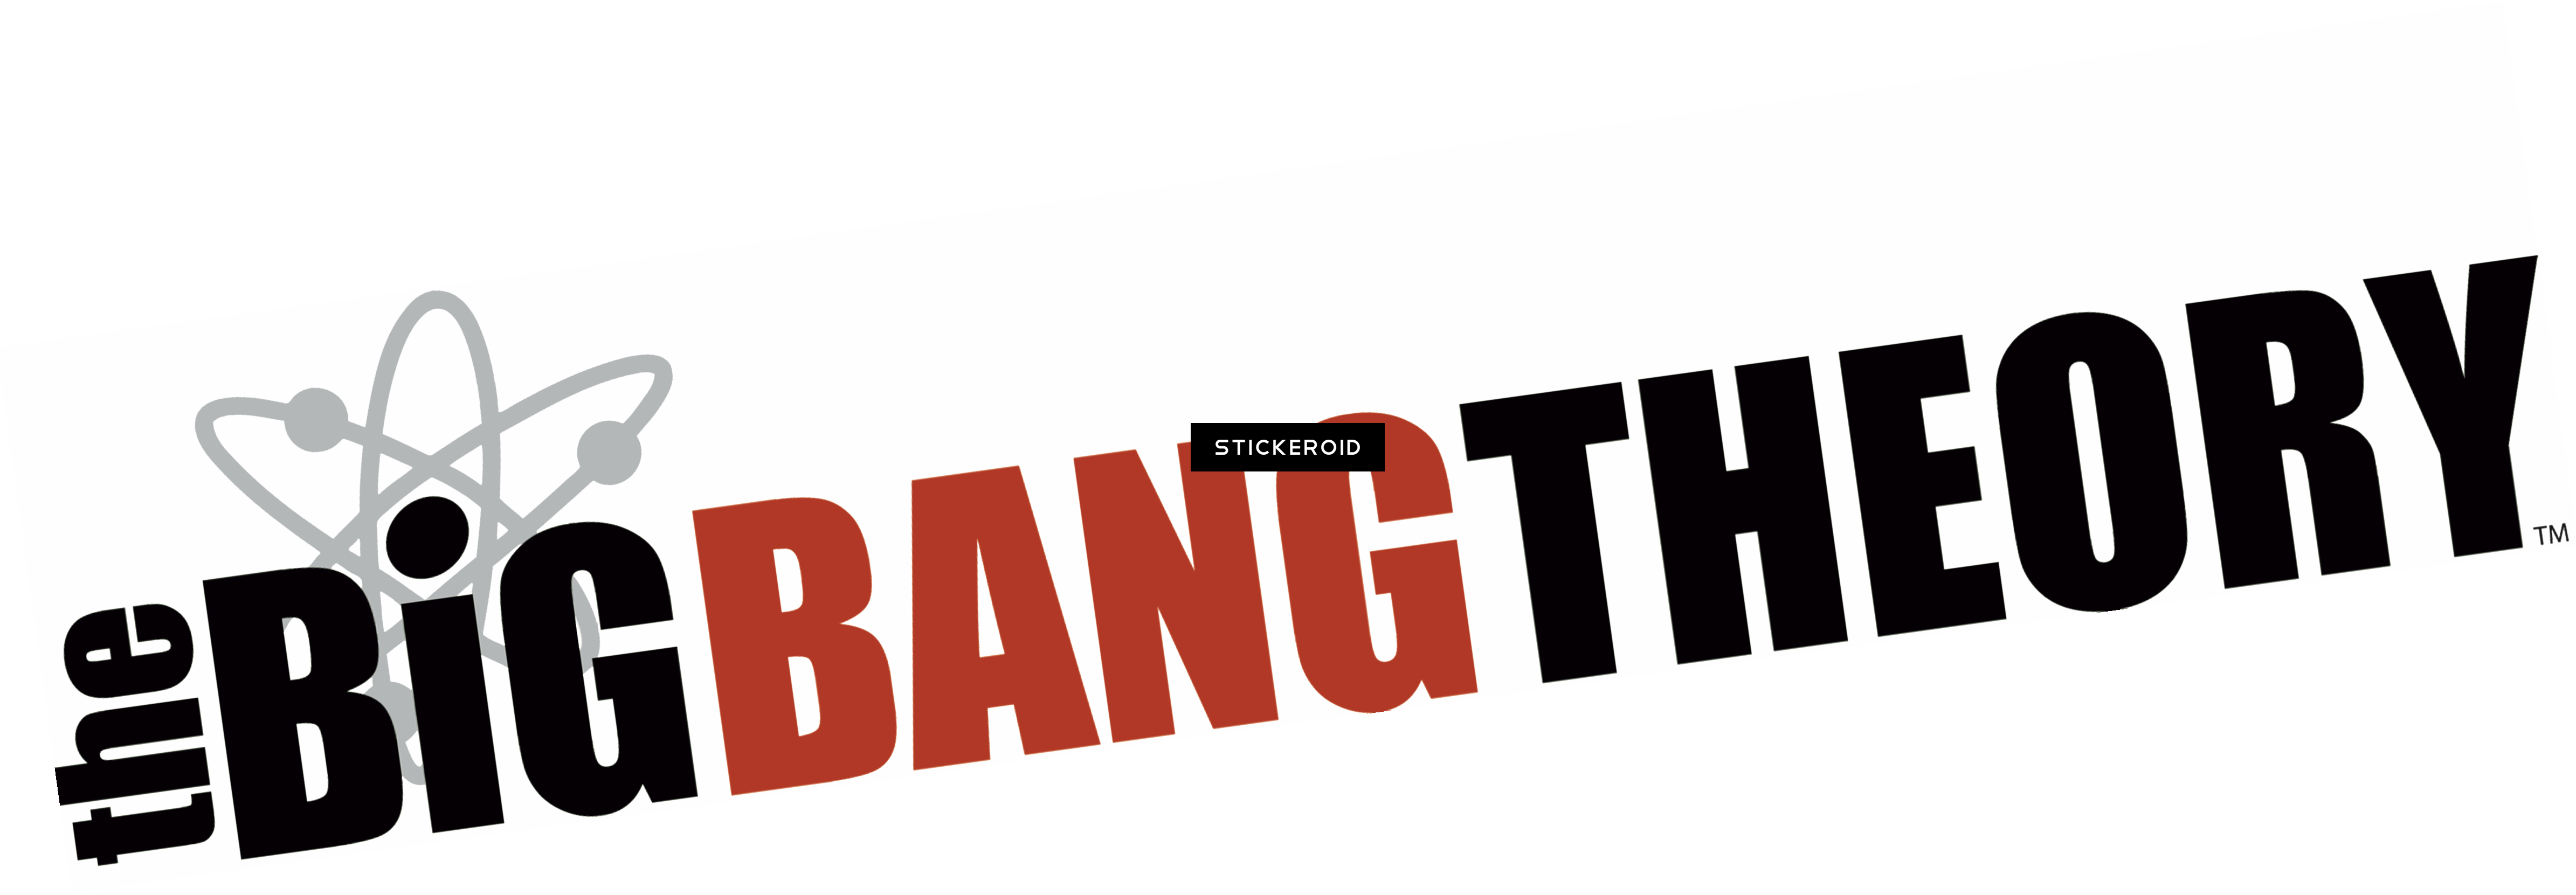 The Big Bang Theory Png - Big Bang Theory Png Clipart (4779x1661), Png Download